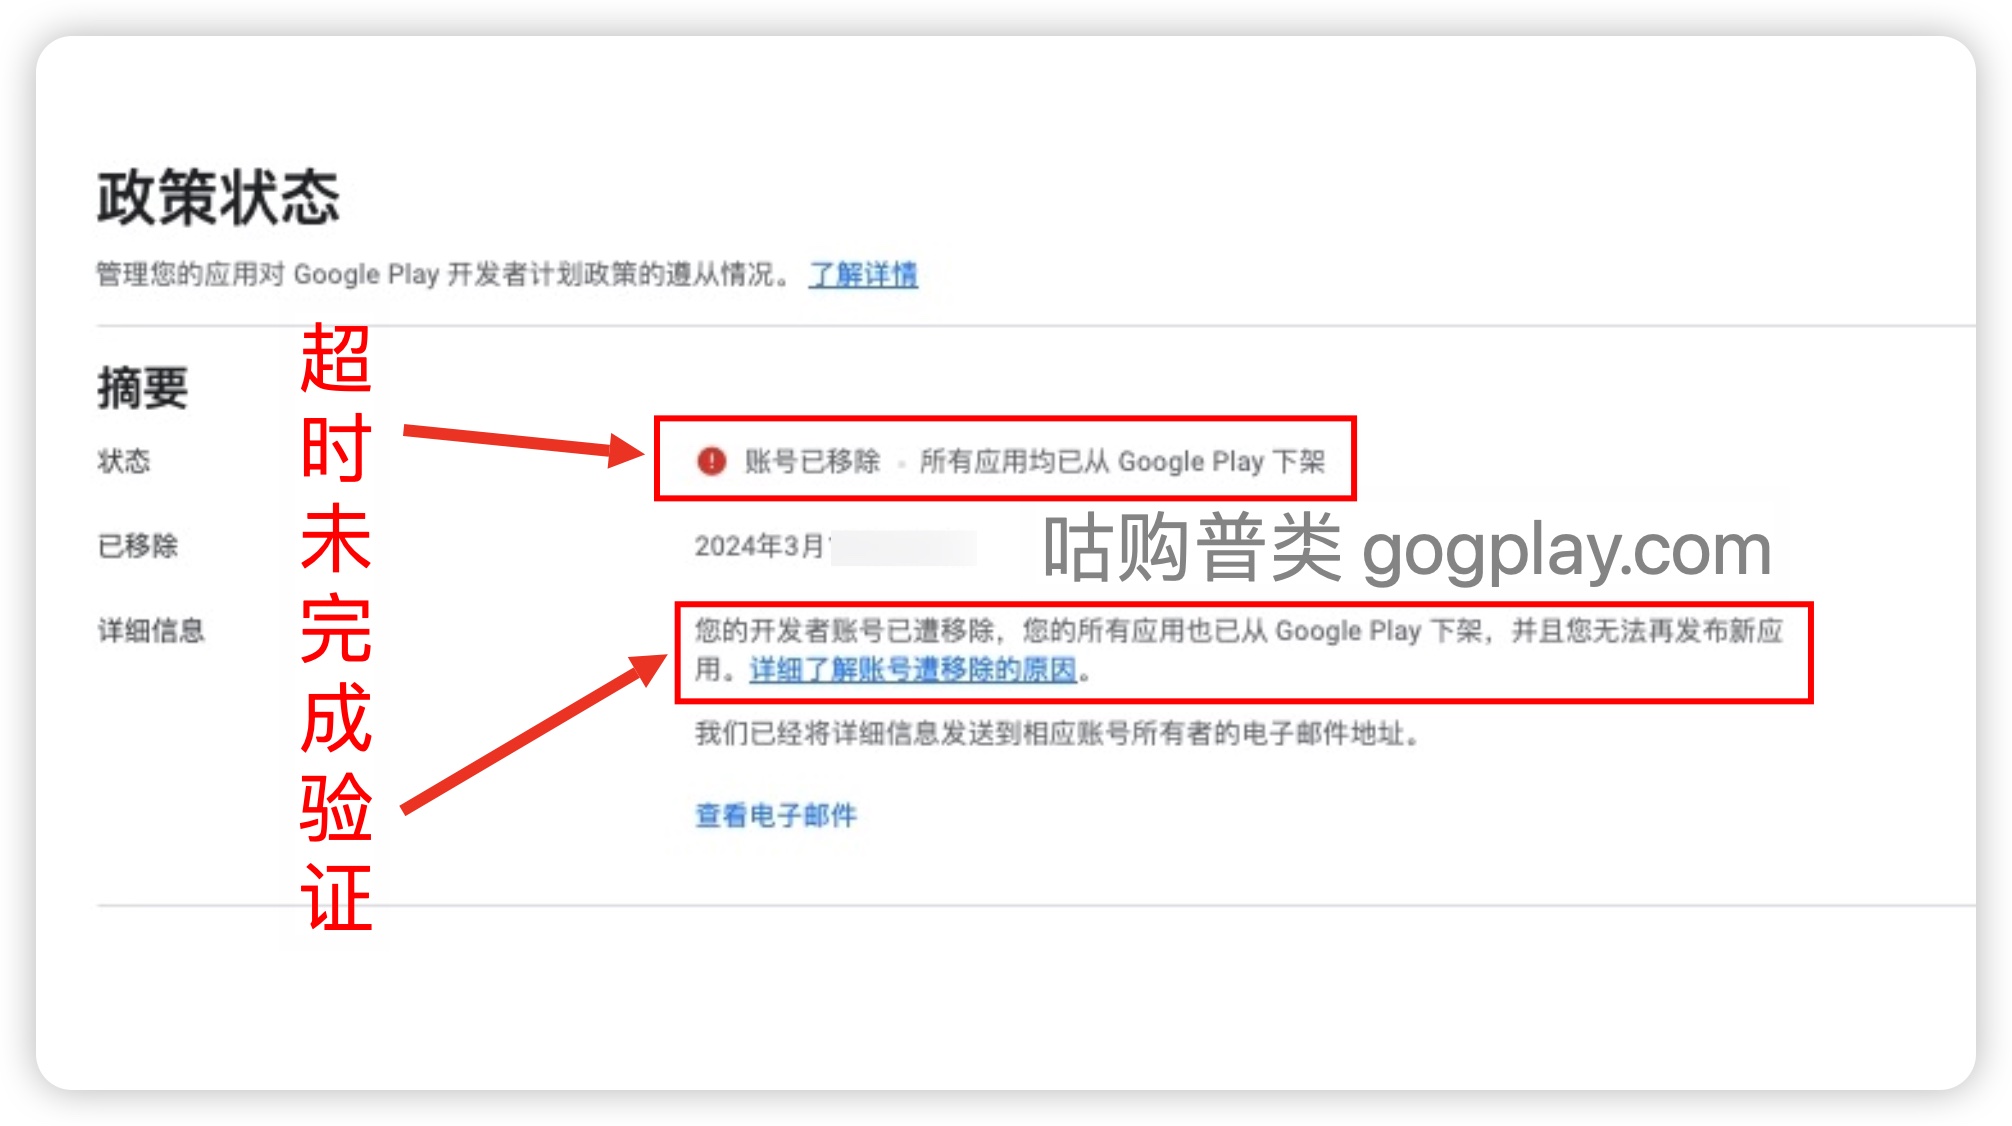 Google Play邓氏编码组织验证问题未完成验证导致移除下架